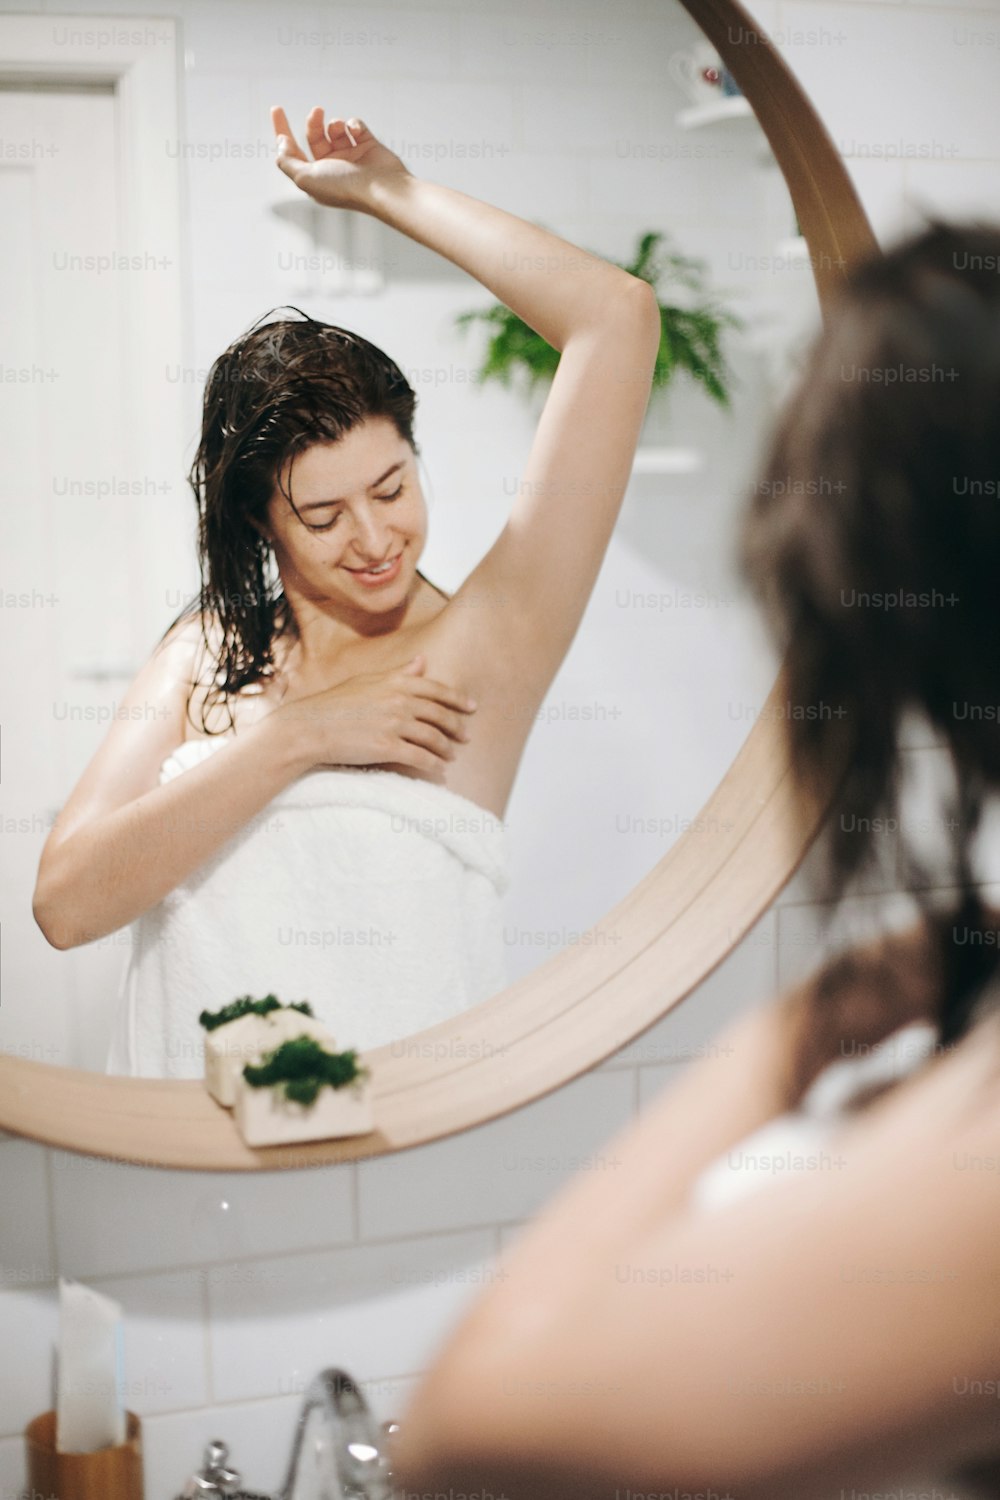 Jeune femme attrayante aux cheveux mouillés dans une serviette blanche regardant une peau douce et lisse après le rasage des aisselles, reflet dans le miroir dans une salle de bain élégante avec de la verdure. Soins de la peau et du corps, concept de bien-être